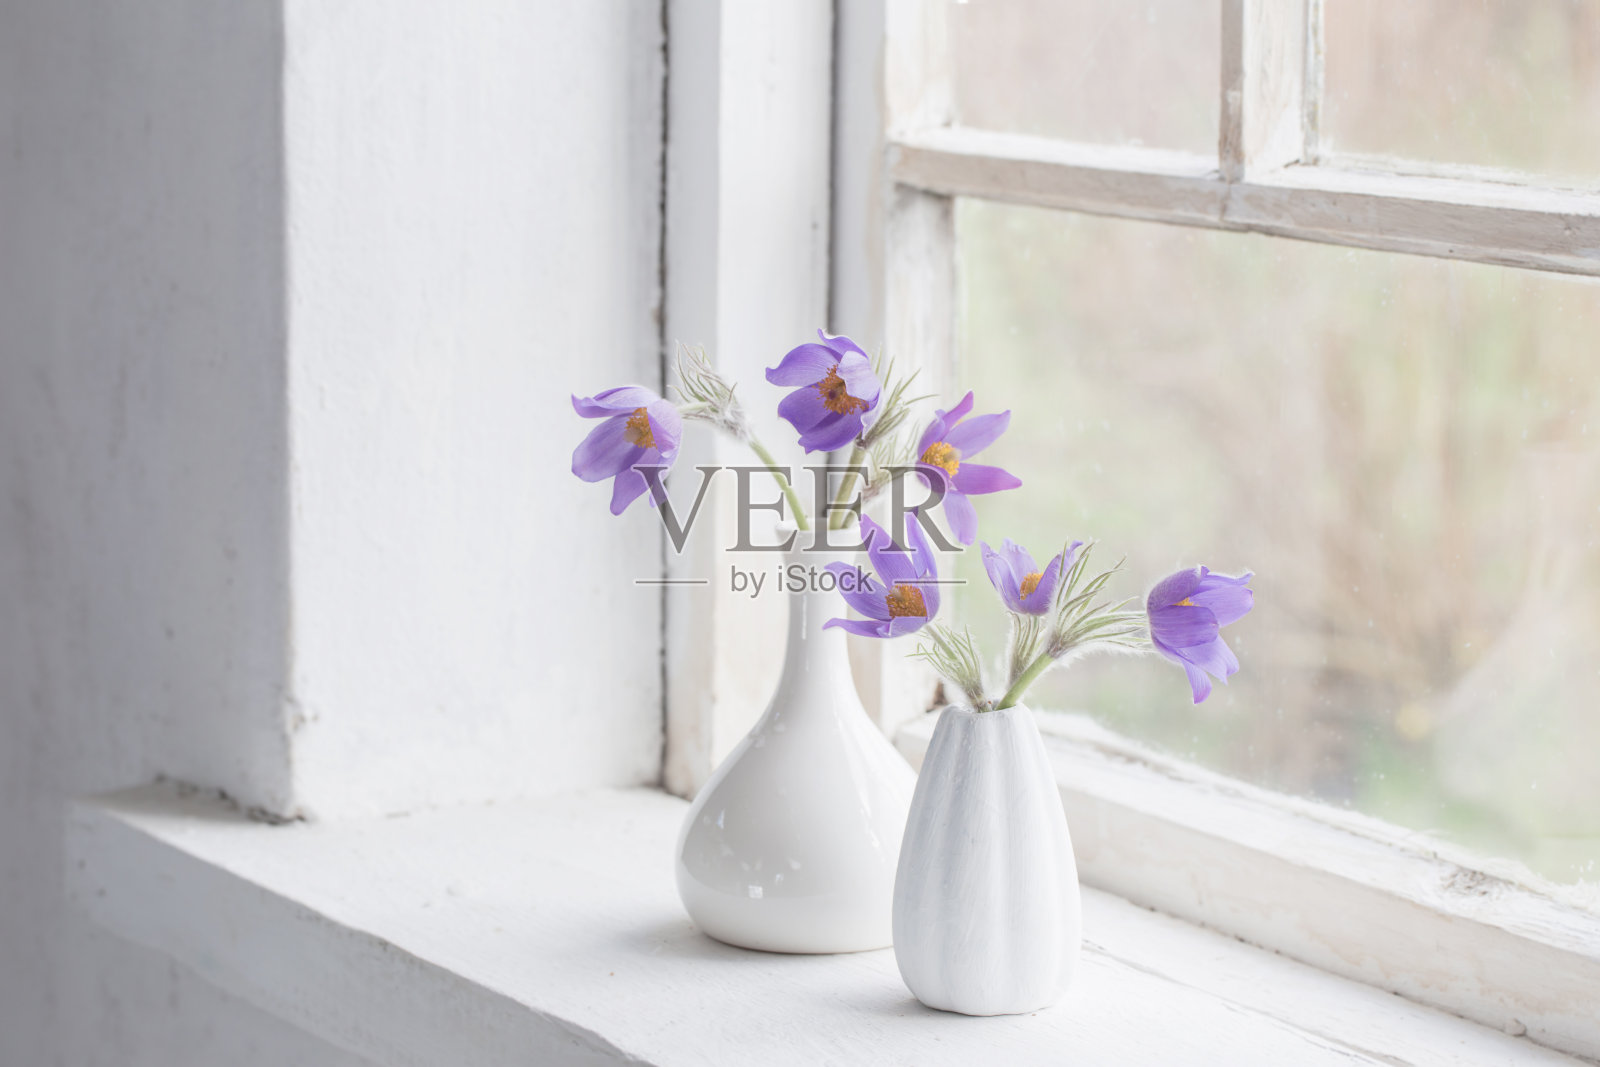 窗台上花瓶里的白头花照片摄影图片